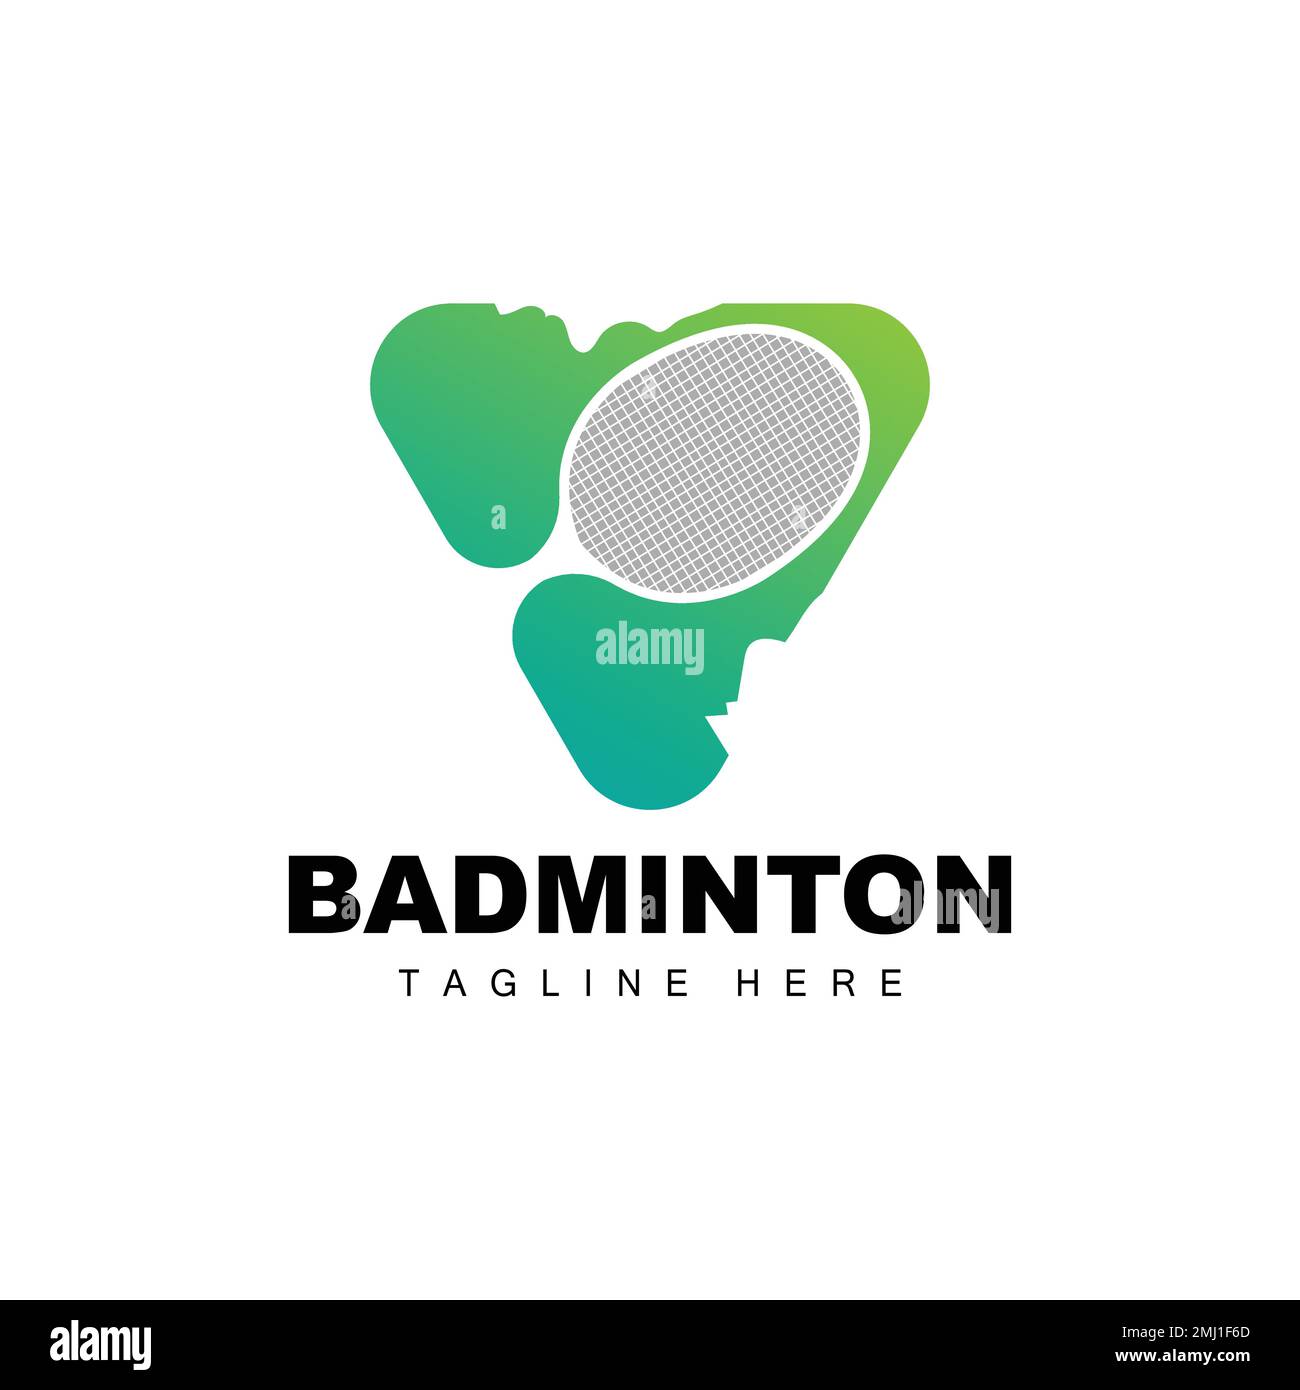 Badminton Logo, Sport Game Vector With Shuttlecock Racket, Sport Branch Design, Template Icon Stock Vector